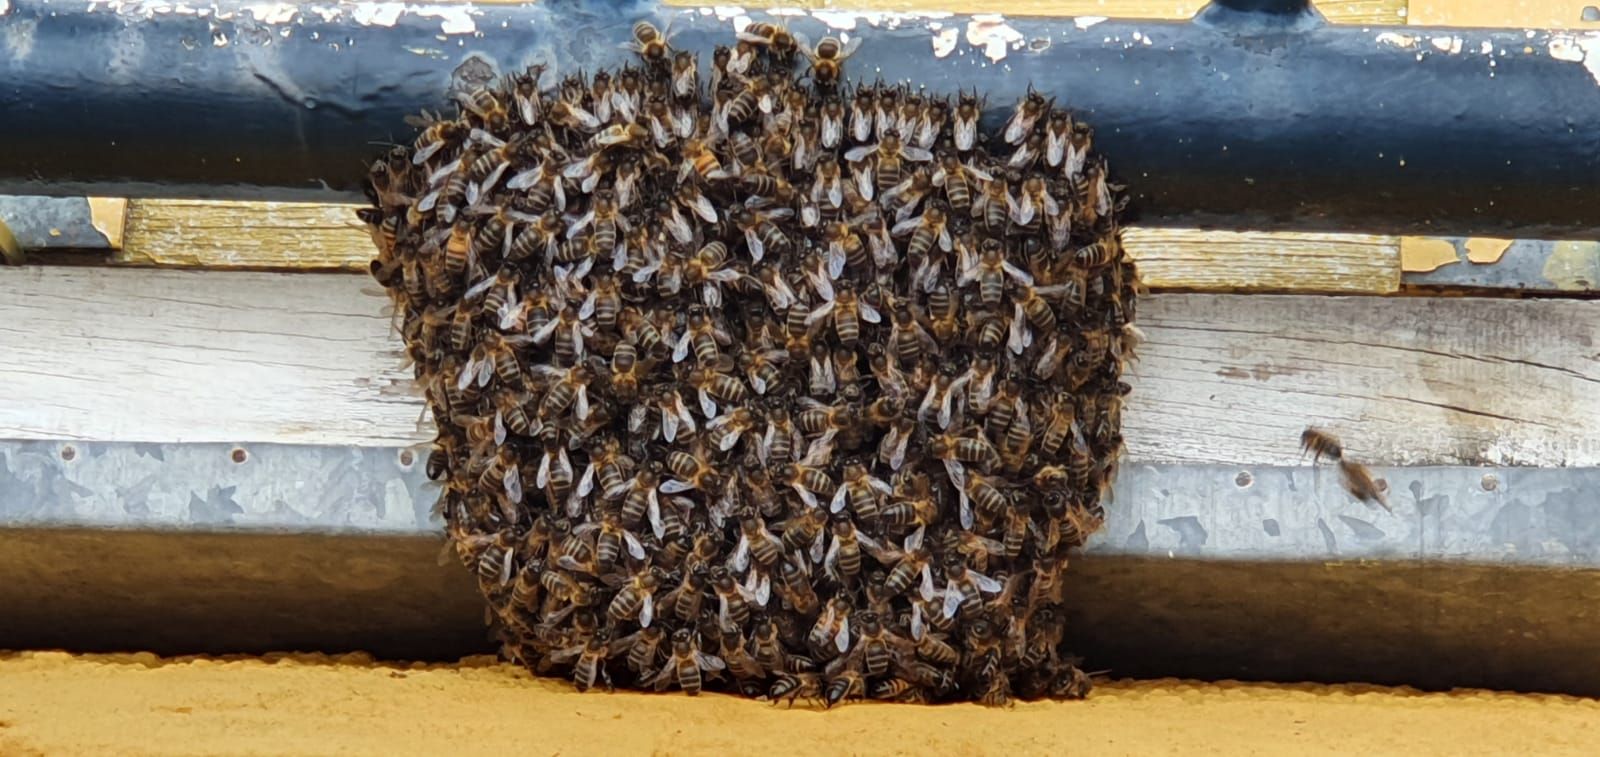 Un enjambre de abejas negras 'toma' la cancha de un colegio de Santa Brígida